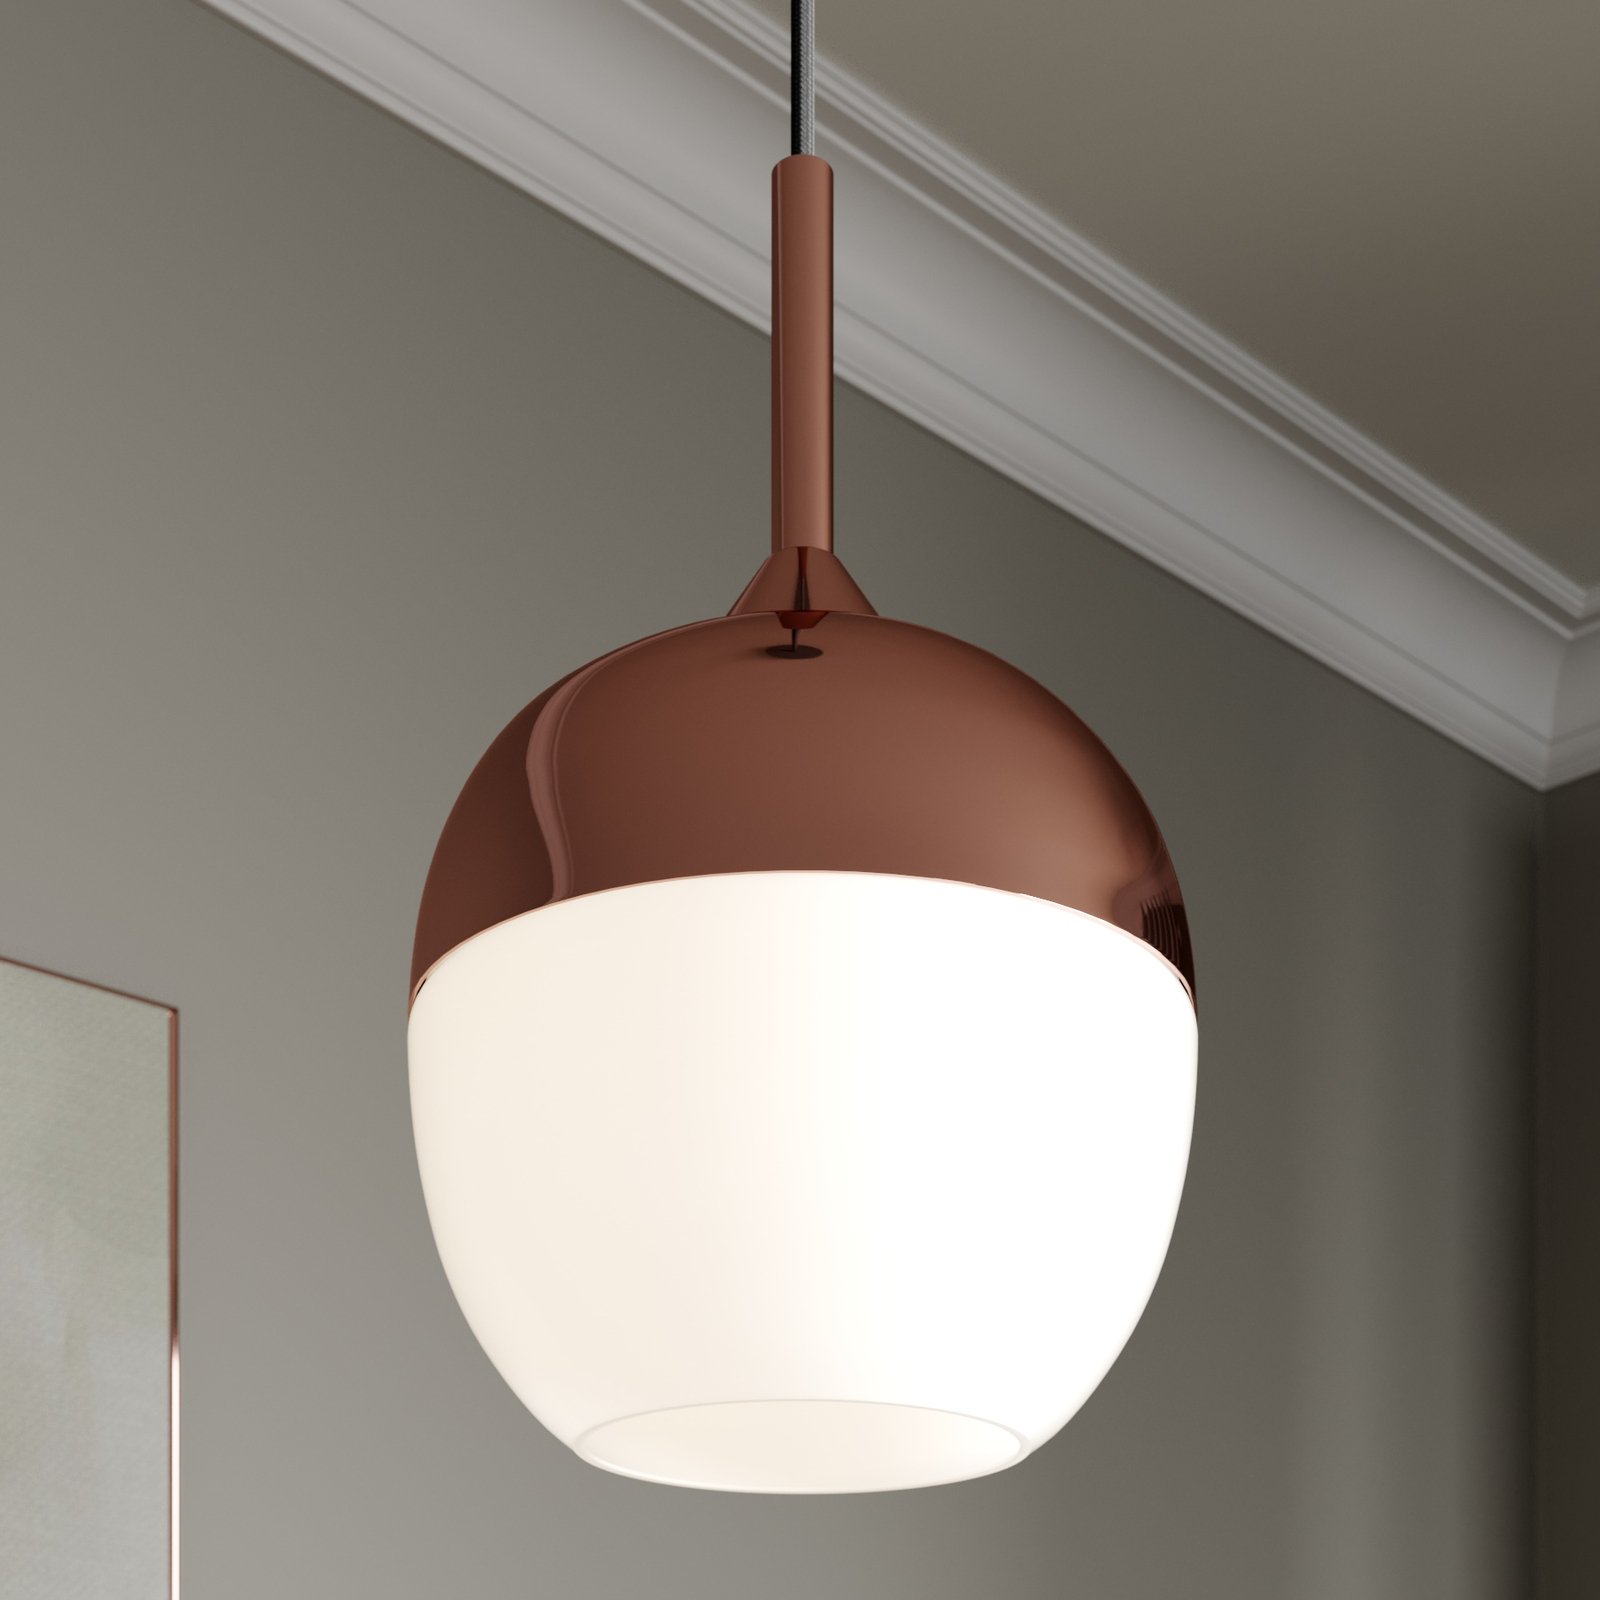 Copper-coloured Deda pendant lamp